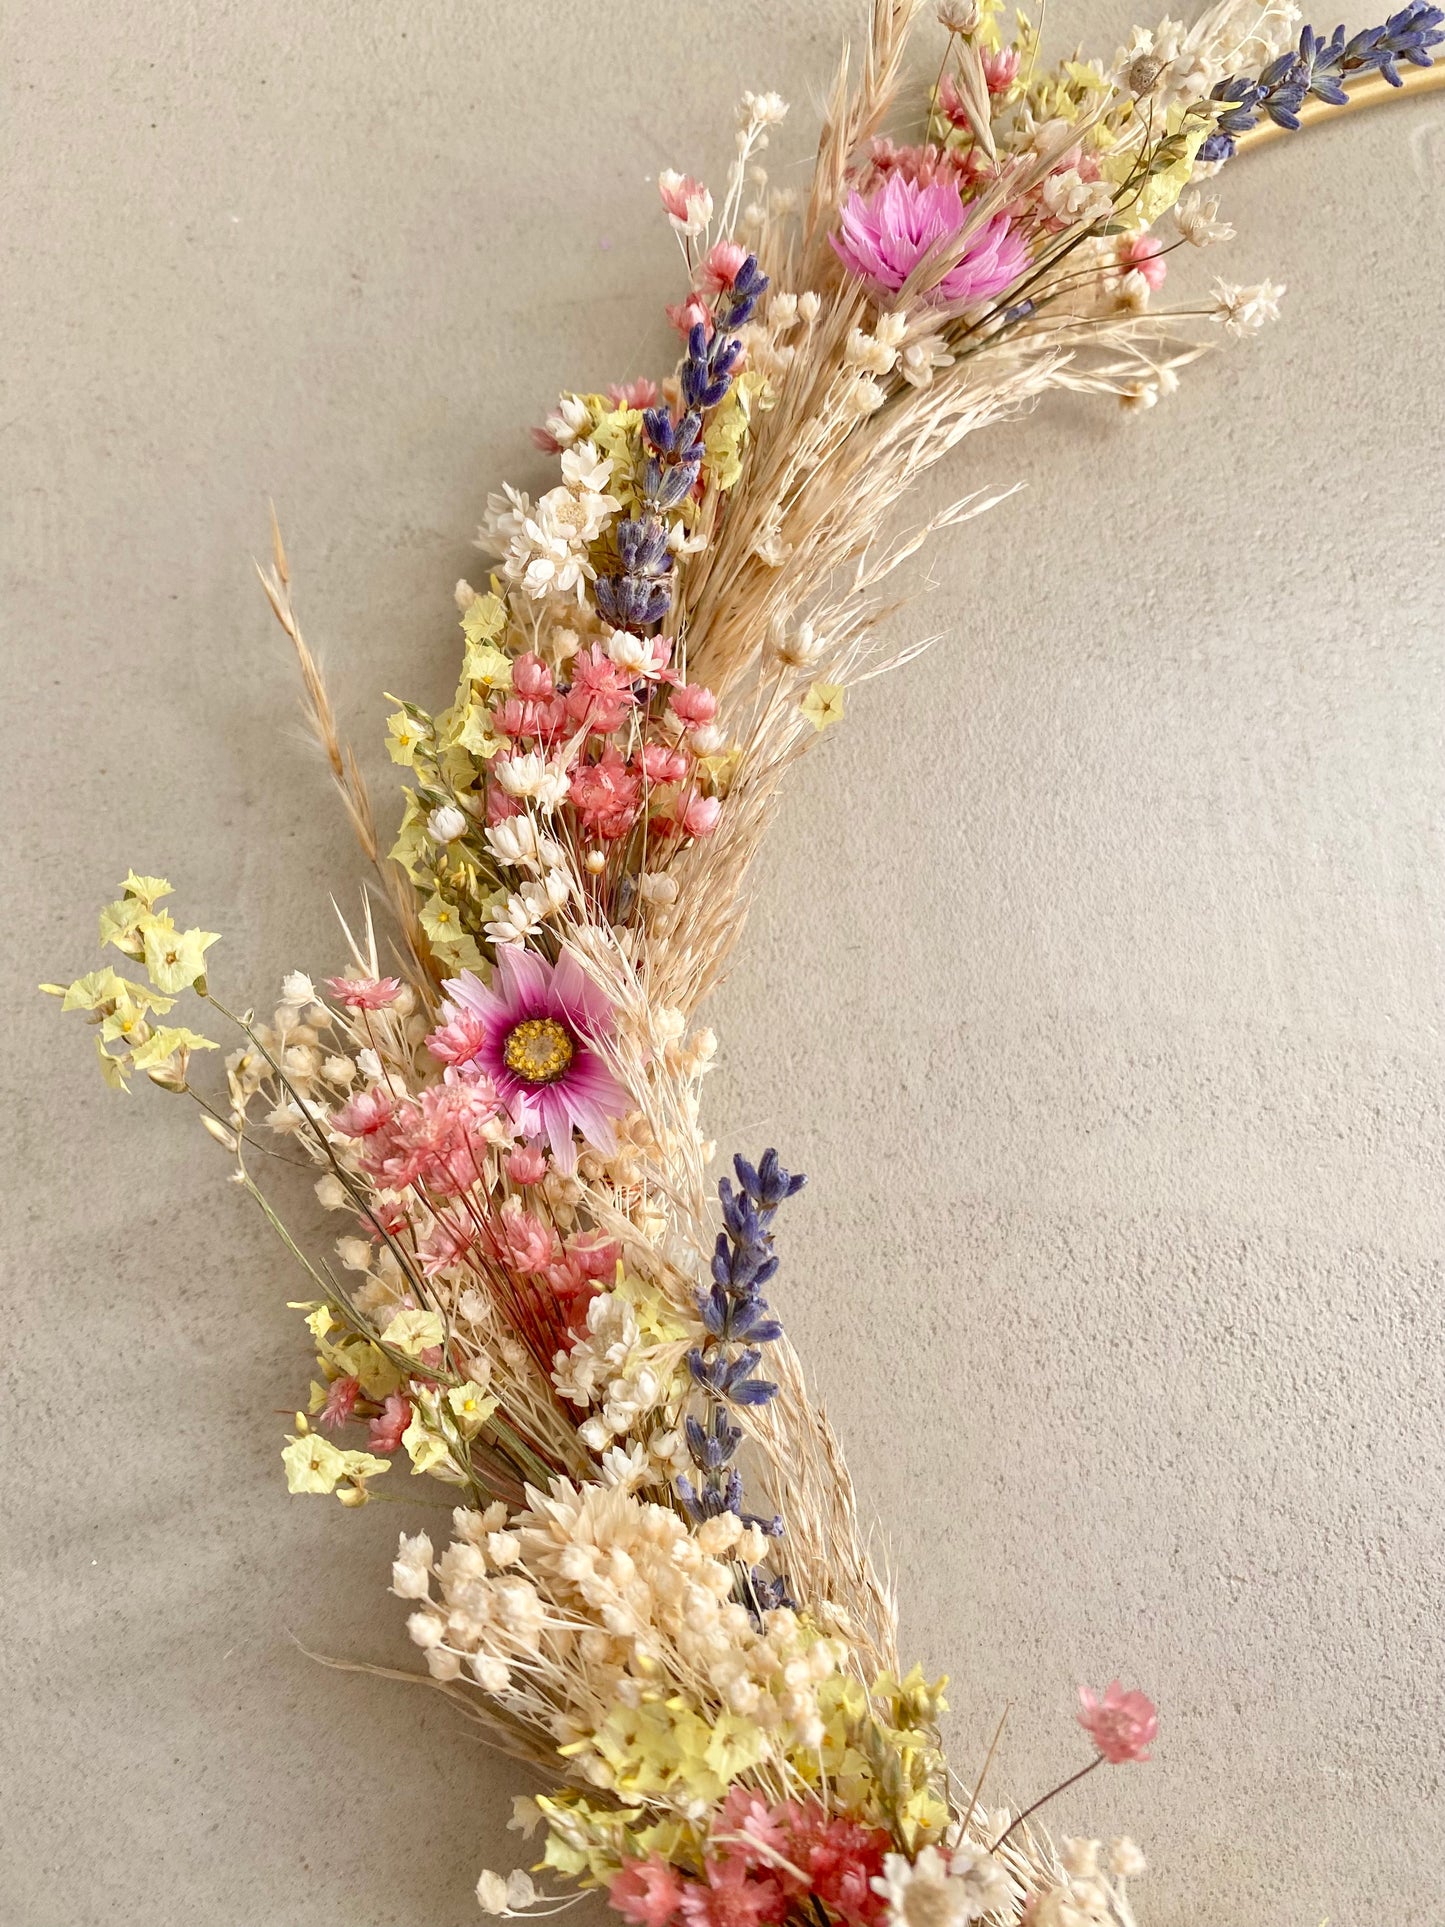 Atelier couronne fleurie & Brunch 💐 🥞- Dimanche 17 septembre